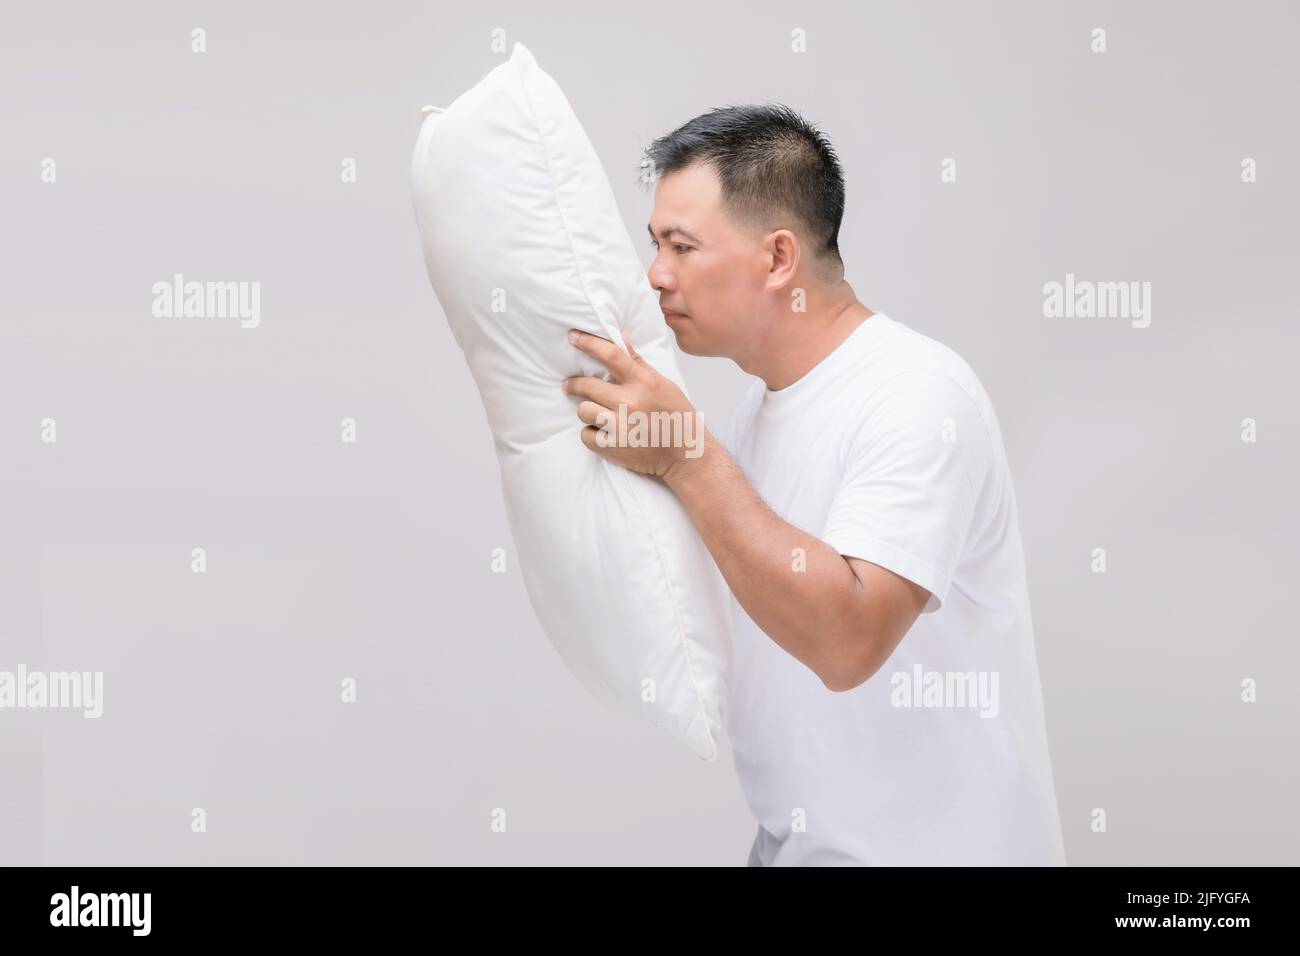 Das Kissen riecht schlecht. Portrait asiatischer Mann mit weißem Kissen und schlechtem Geruch. Studio auf grauem Hintergrund aufgenommen Stockfoto